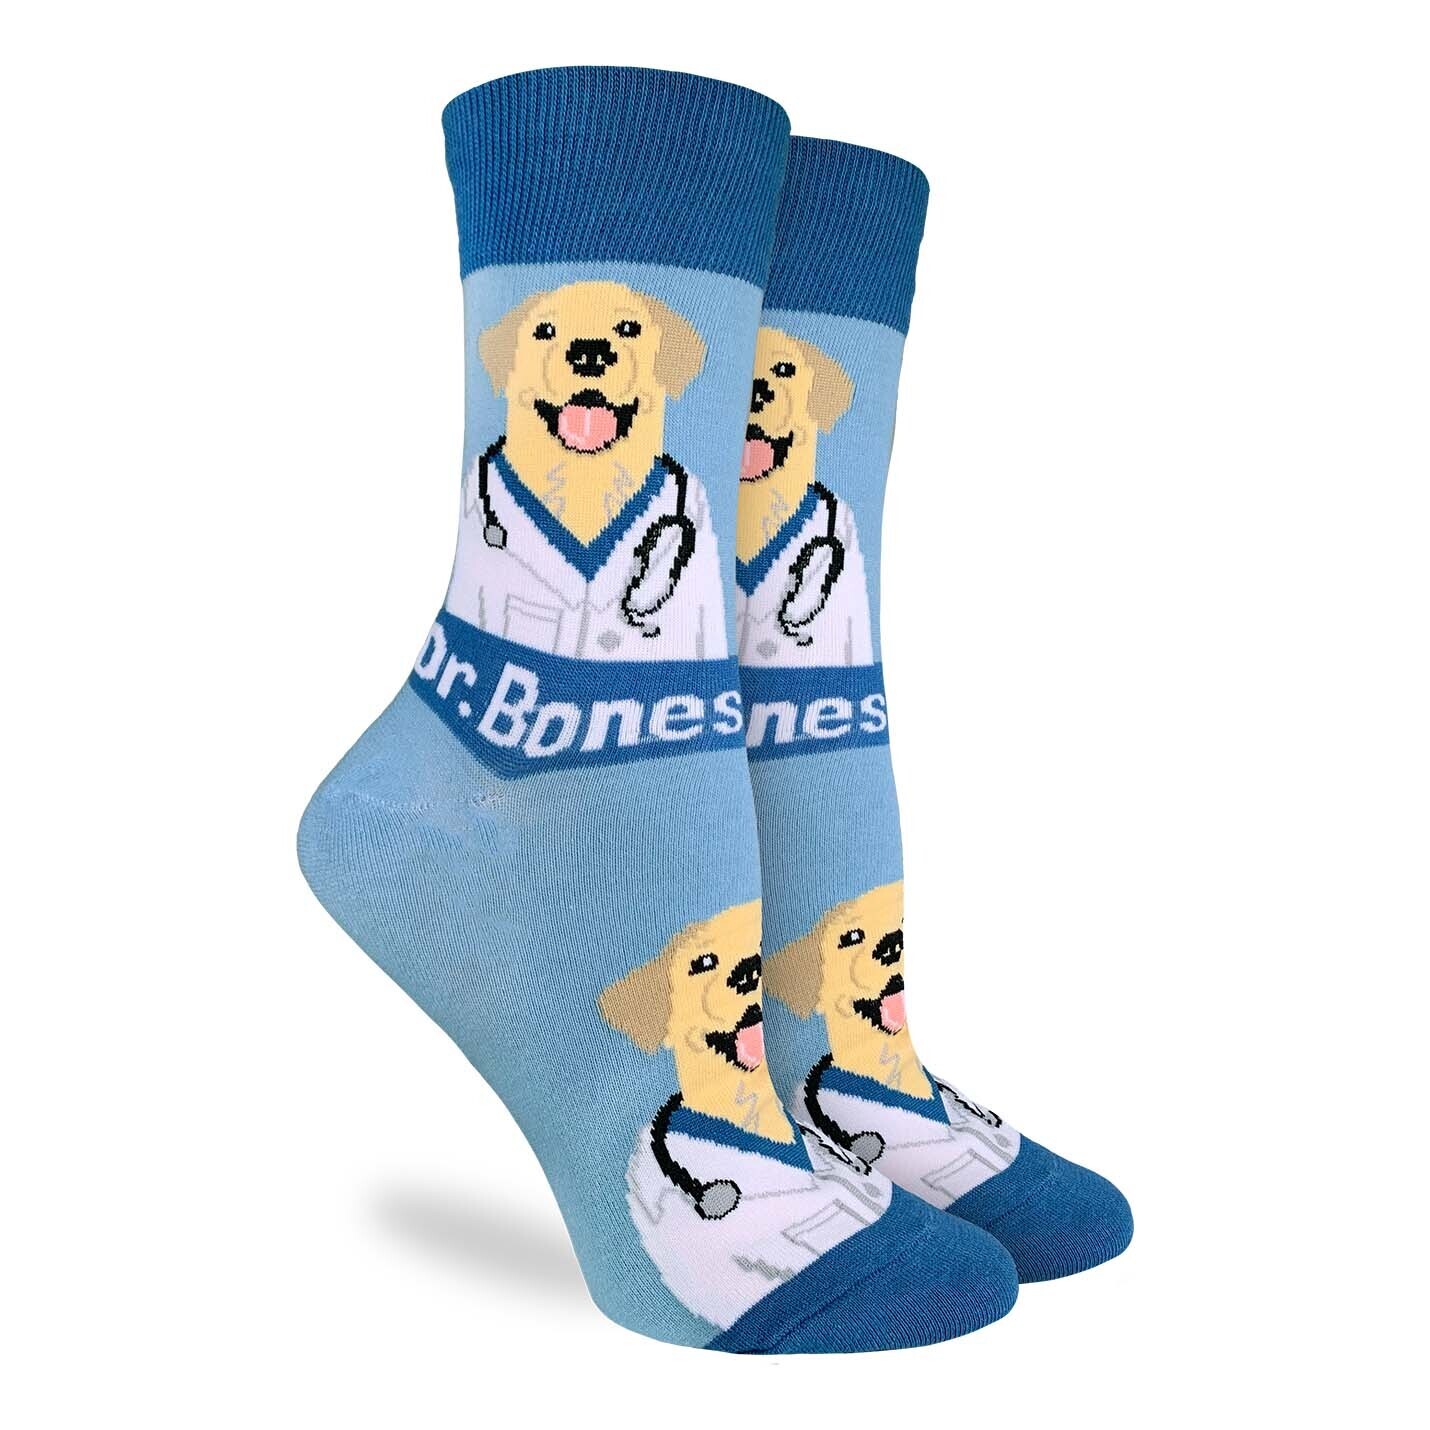 Dr. Bones Dog Vet socks | M/L adult sizes | Good Luck Sock